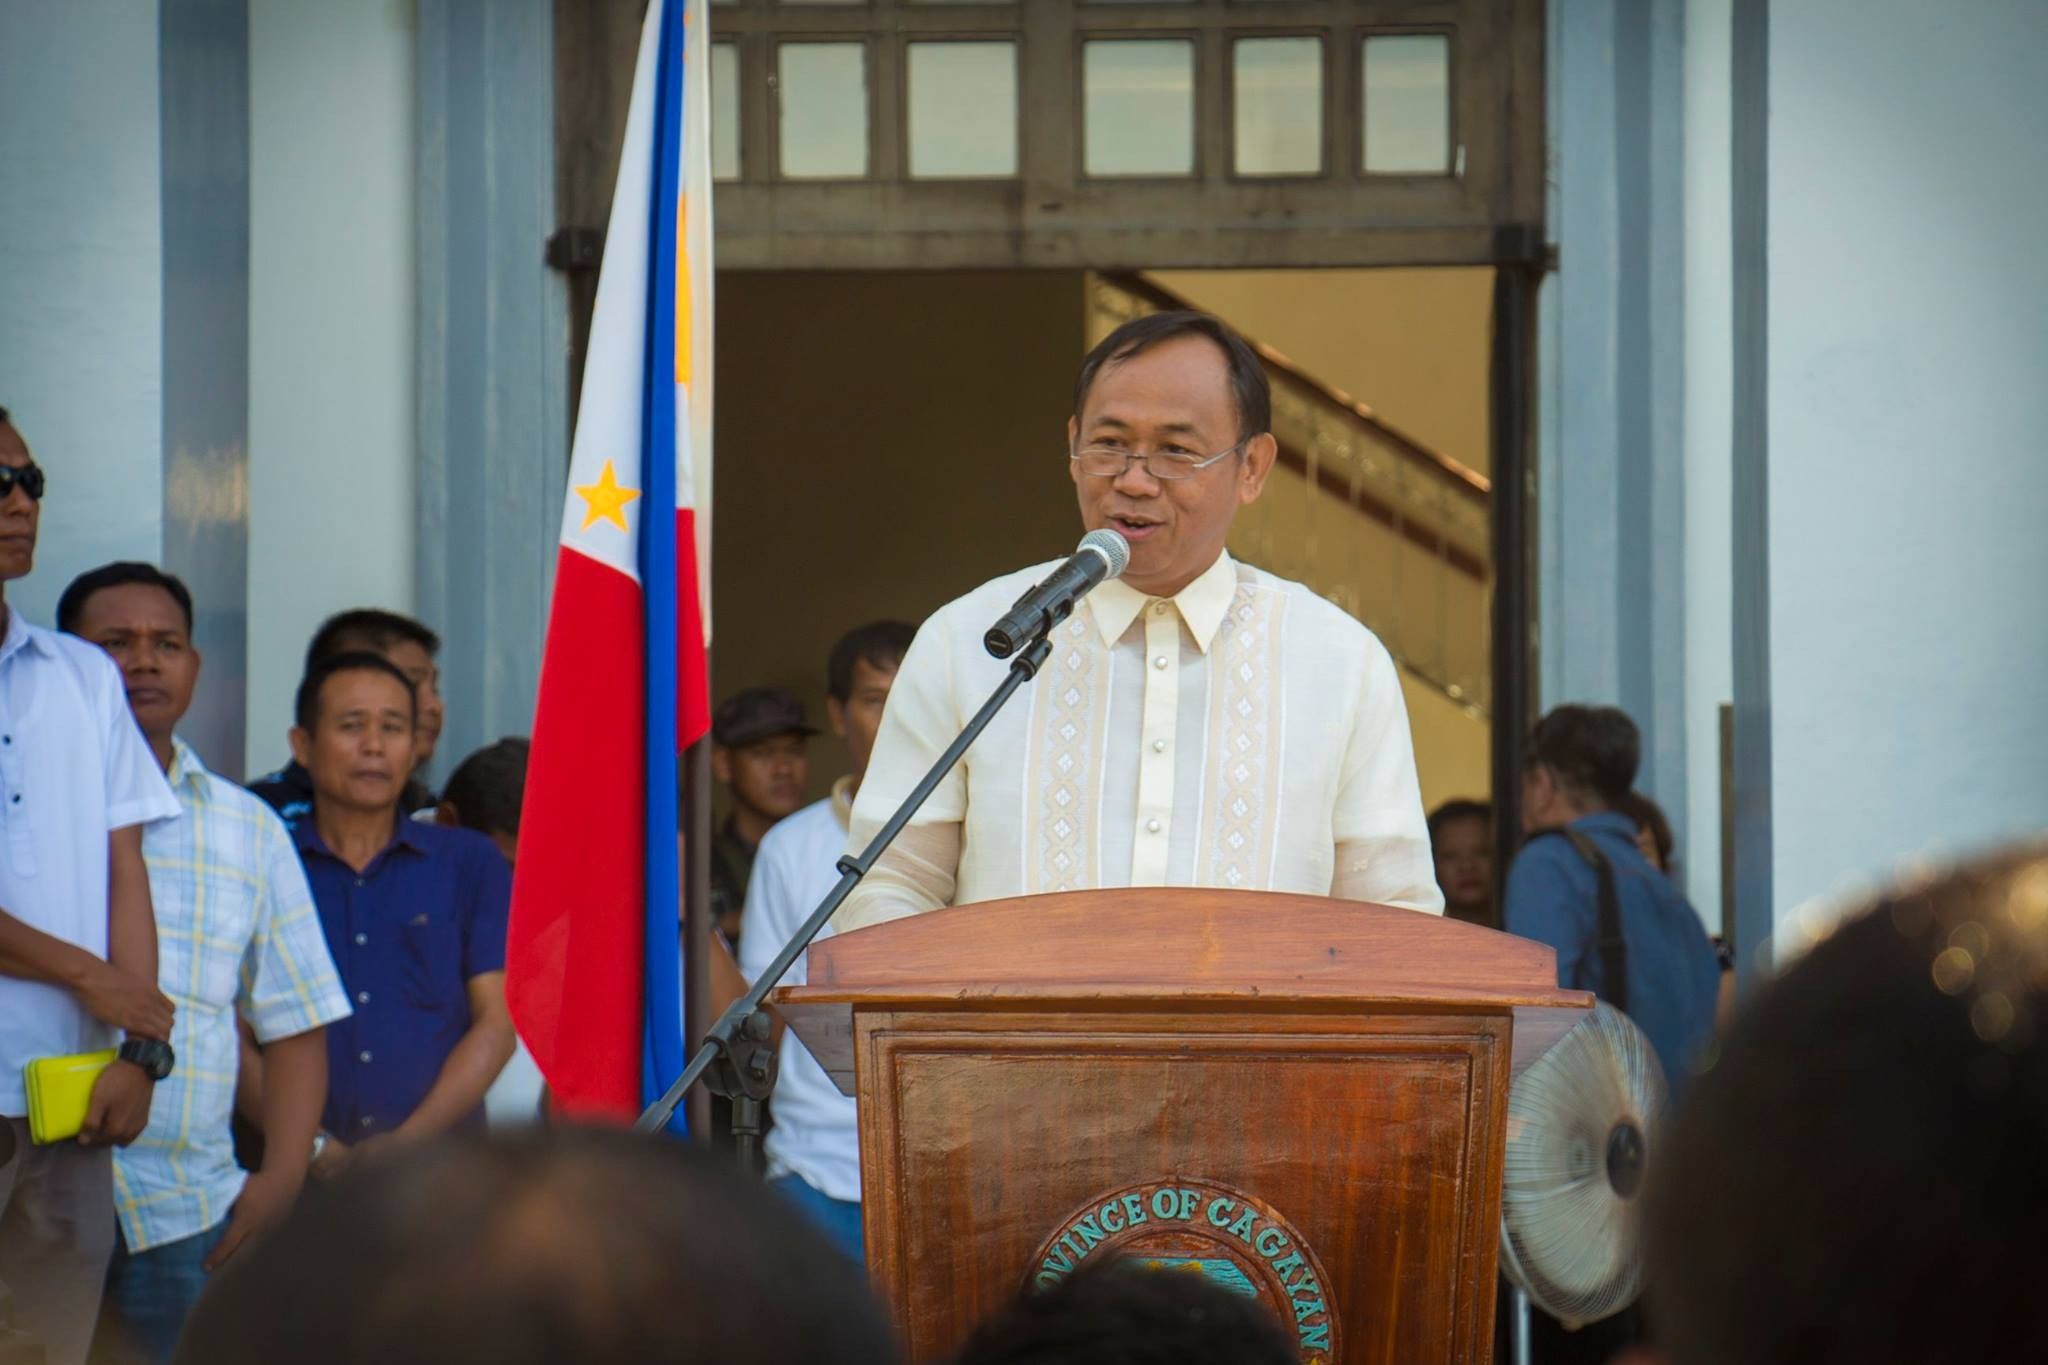 Cagayan governor sorry for anti-Muslim remark at Senate hearing